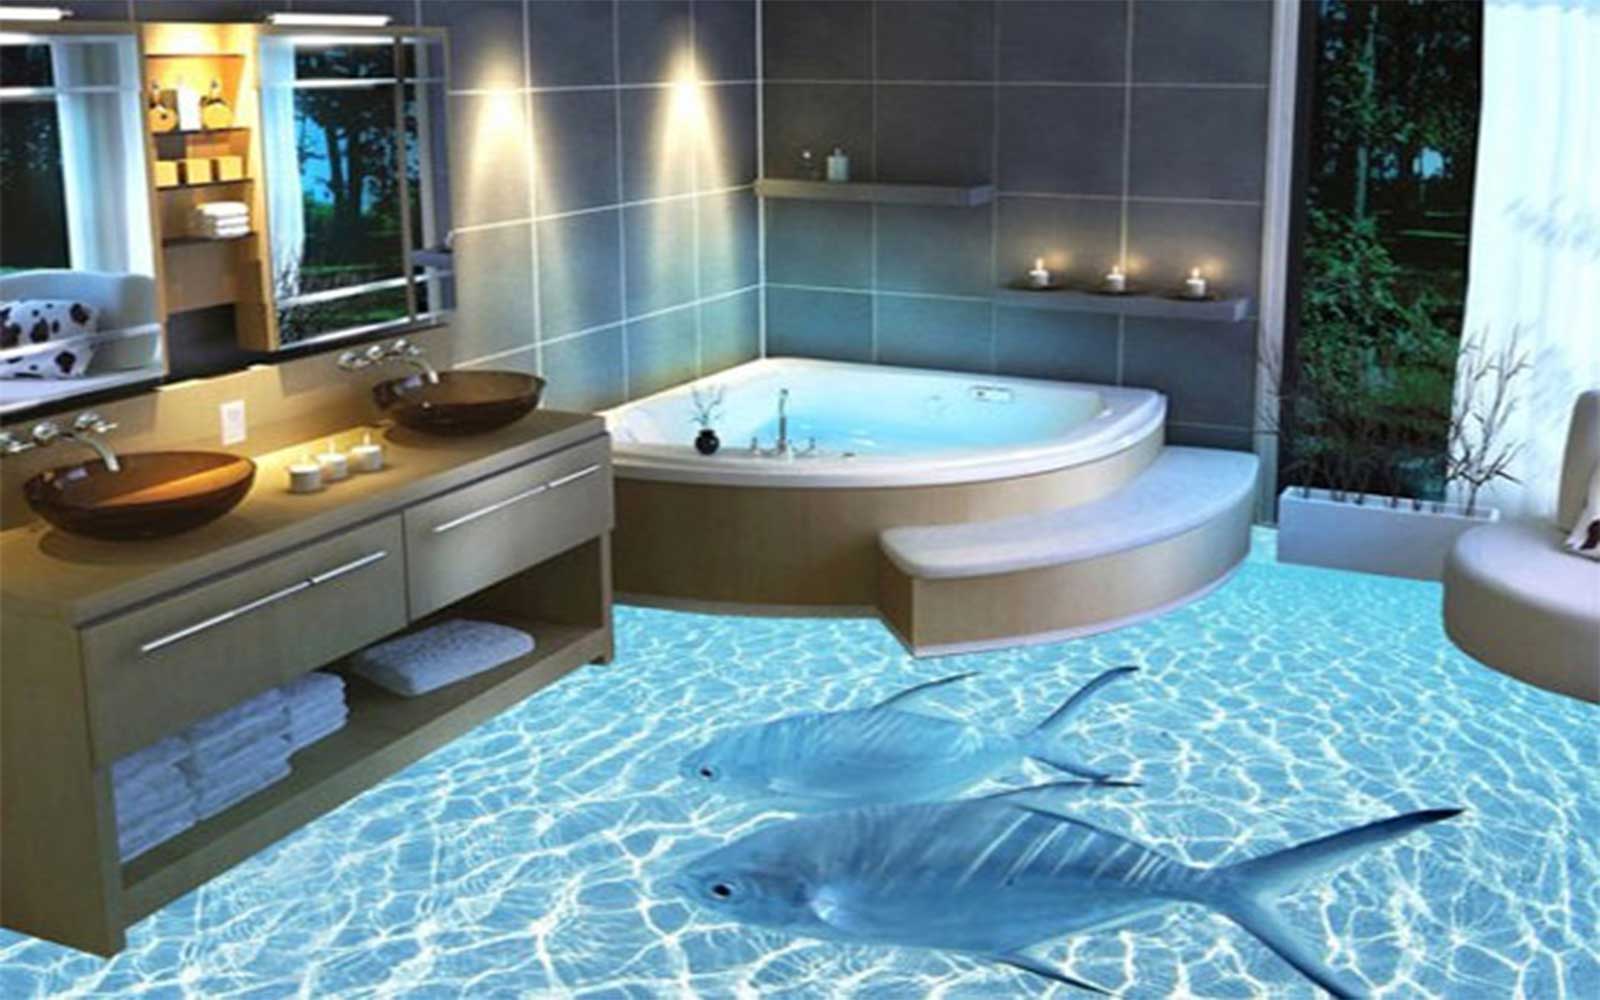 Tạo không gian đại dương ngay trong phòng tắm nhờ mẫu gạch 3D độc đáo